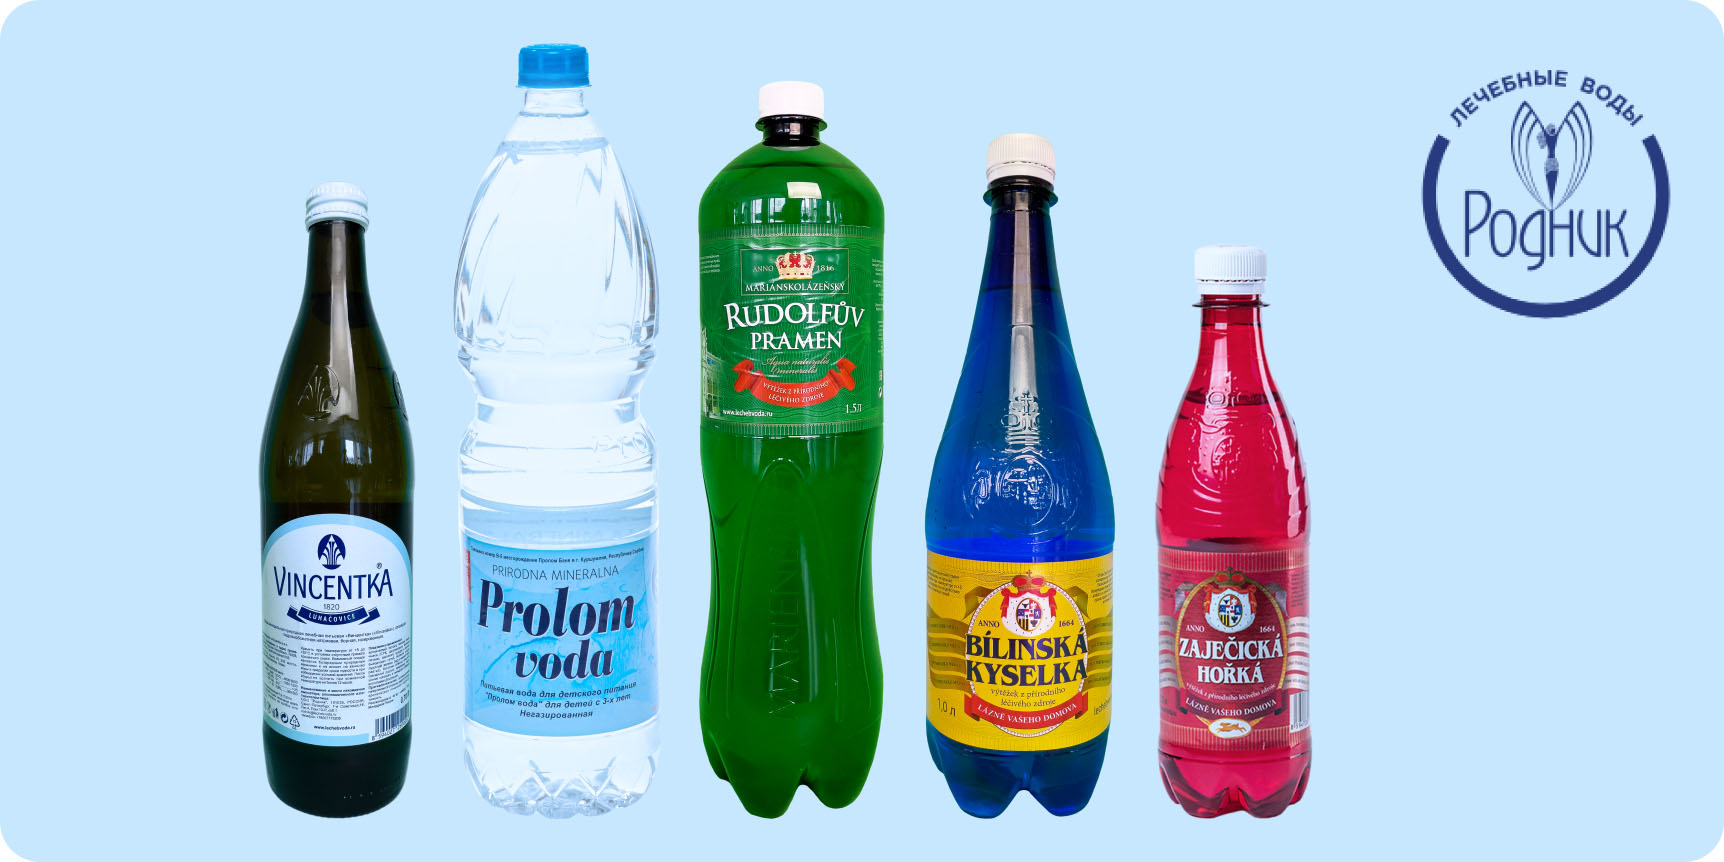 5 видов природной воды Родник в пластиковых бутылках